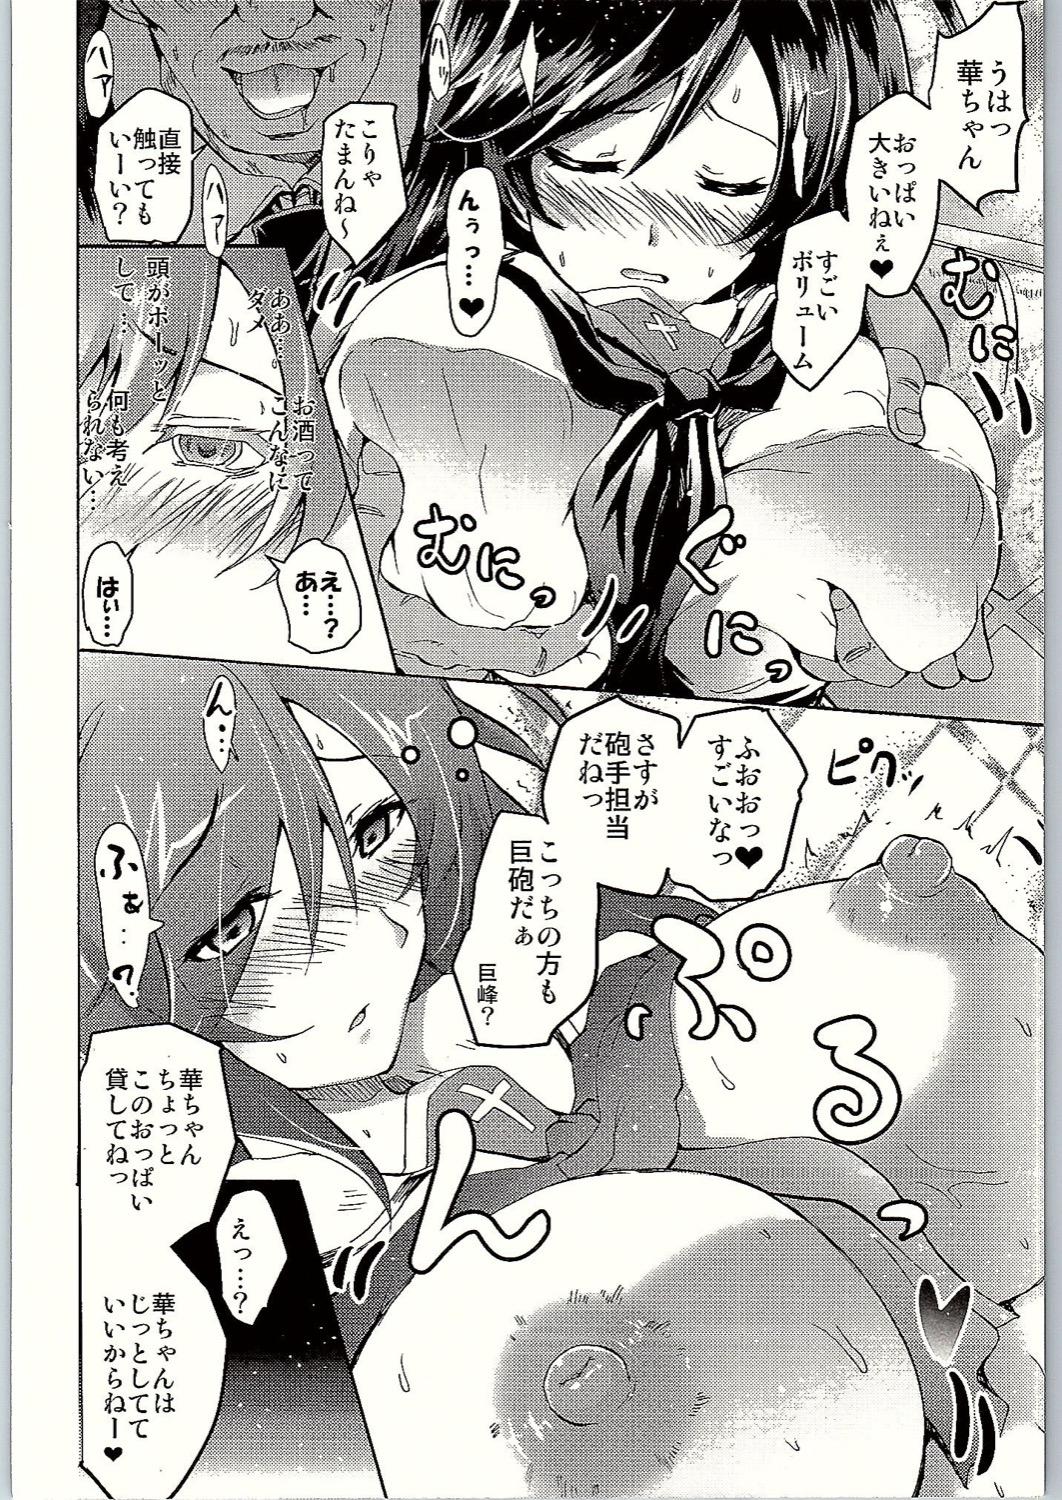 Tia SOS! Senshadou no Okaneatsume wa "Settai" Party! - Girls und panzer Cuckold - Page 9